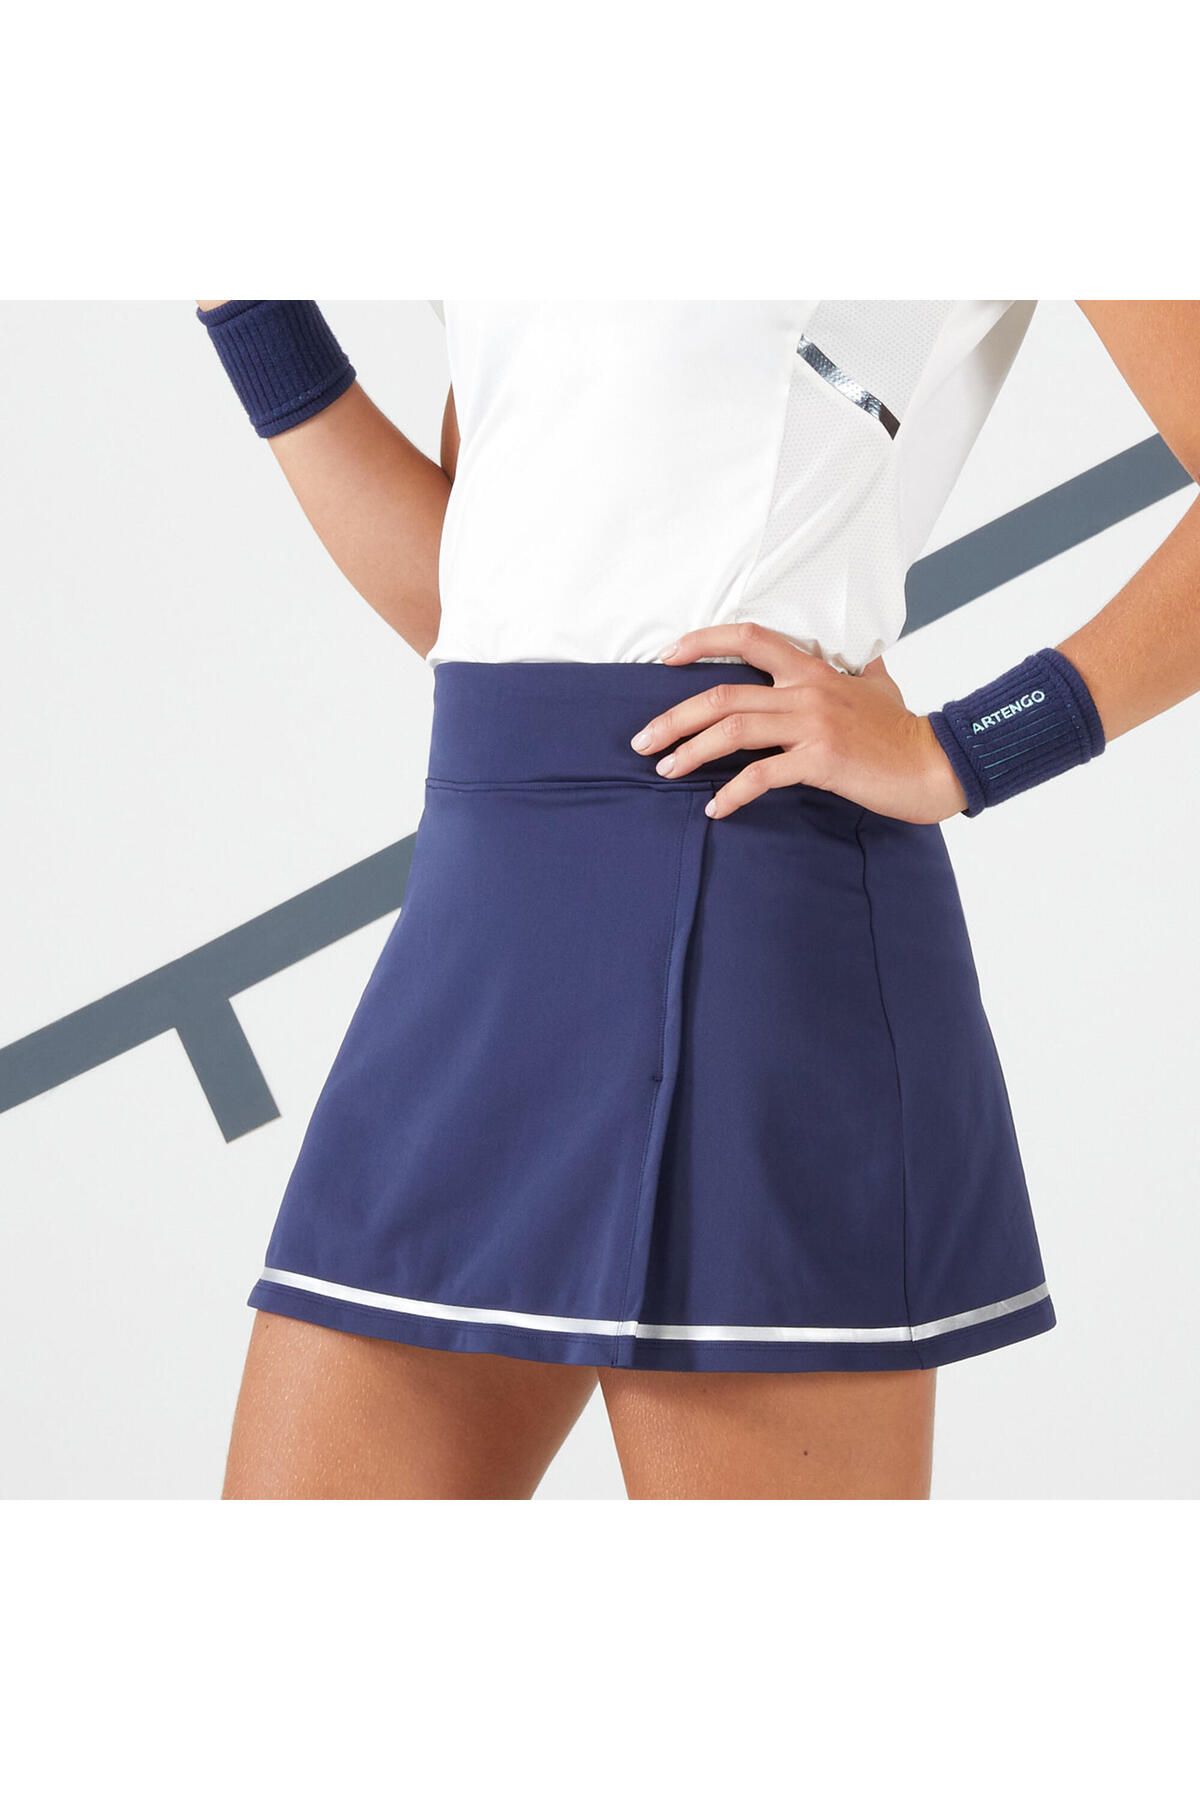 Decathlon Kadın Tenis Eteği - Lacivert - Dry 500